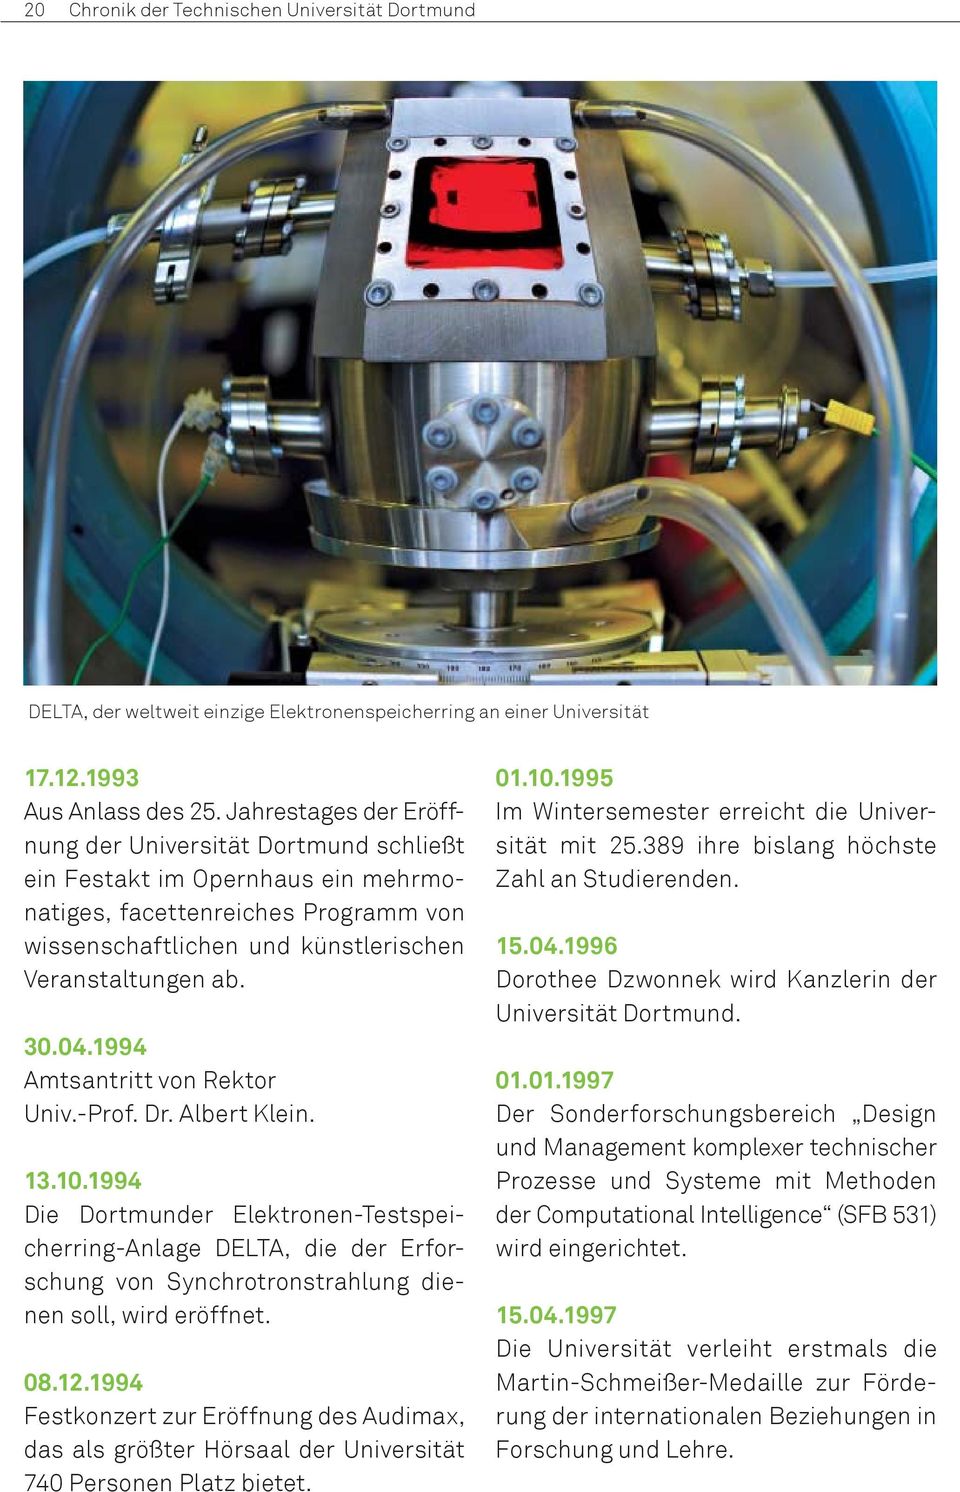 1994 Amtsantritt von Rektor Univ.-Prof. Dr. Albert Klein. 13.10.1994 Die Dortmunder Elektronen-Testspeicherring-Anlage DELTA, die der Erforschung von Synchrotronstrahlung dienen soll, wird eröffnet.